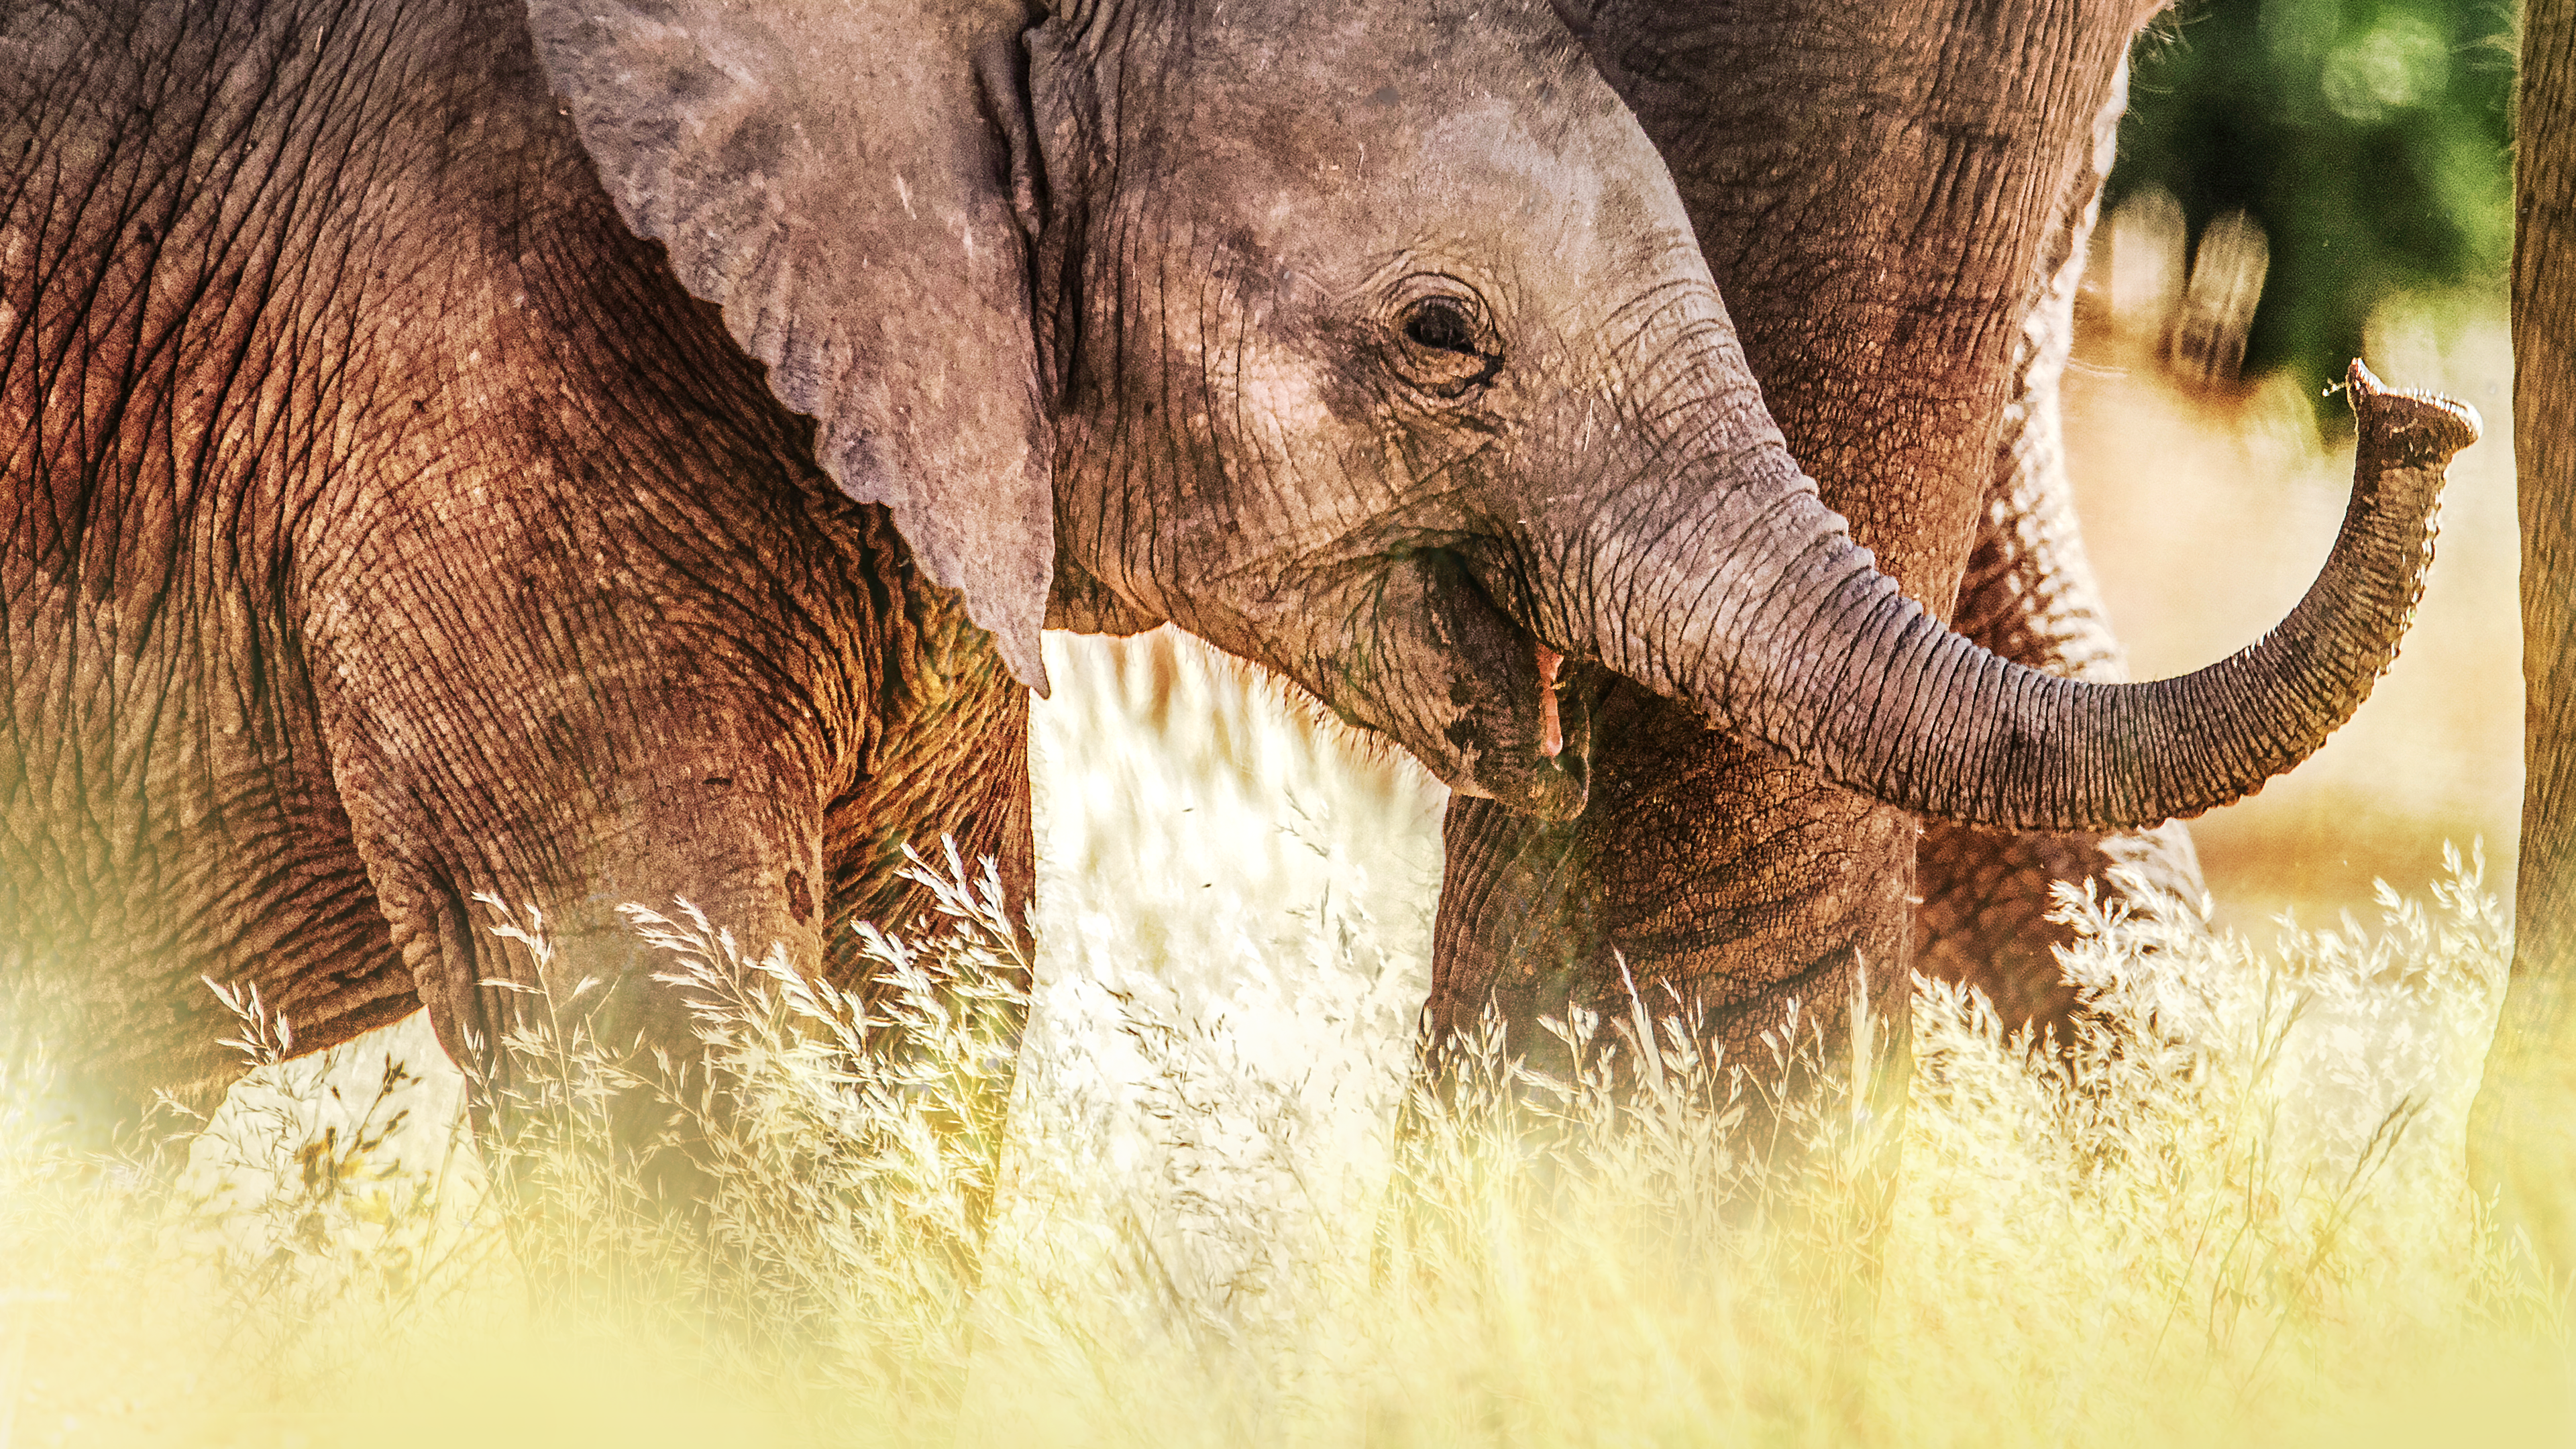 Sekretne życie słoni